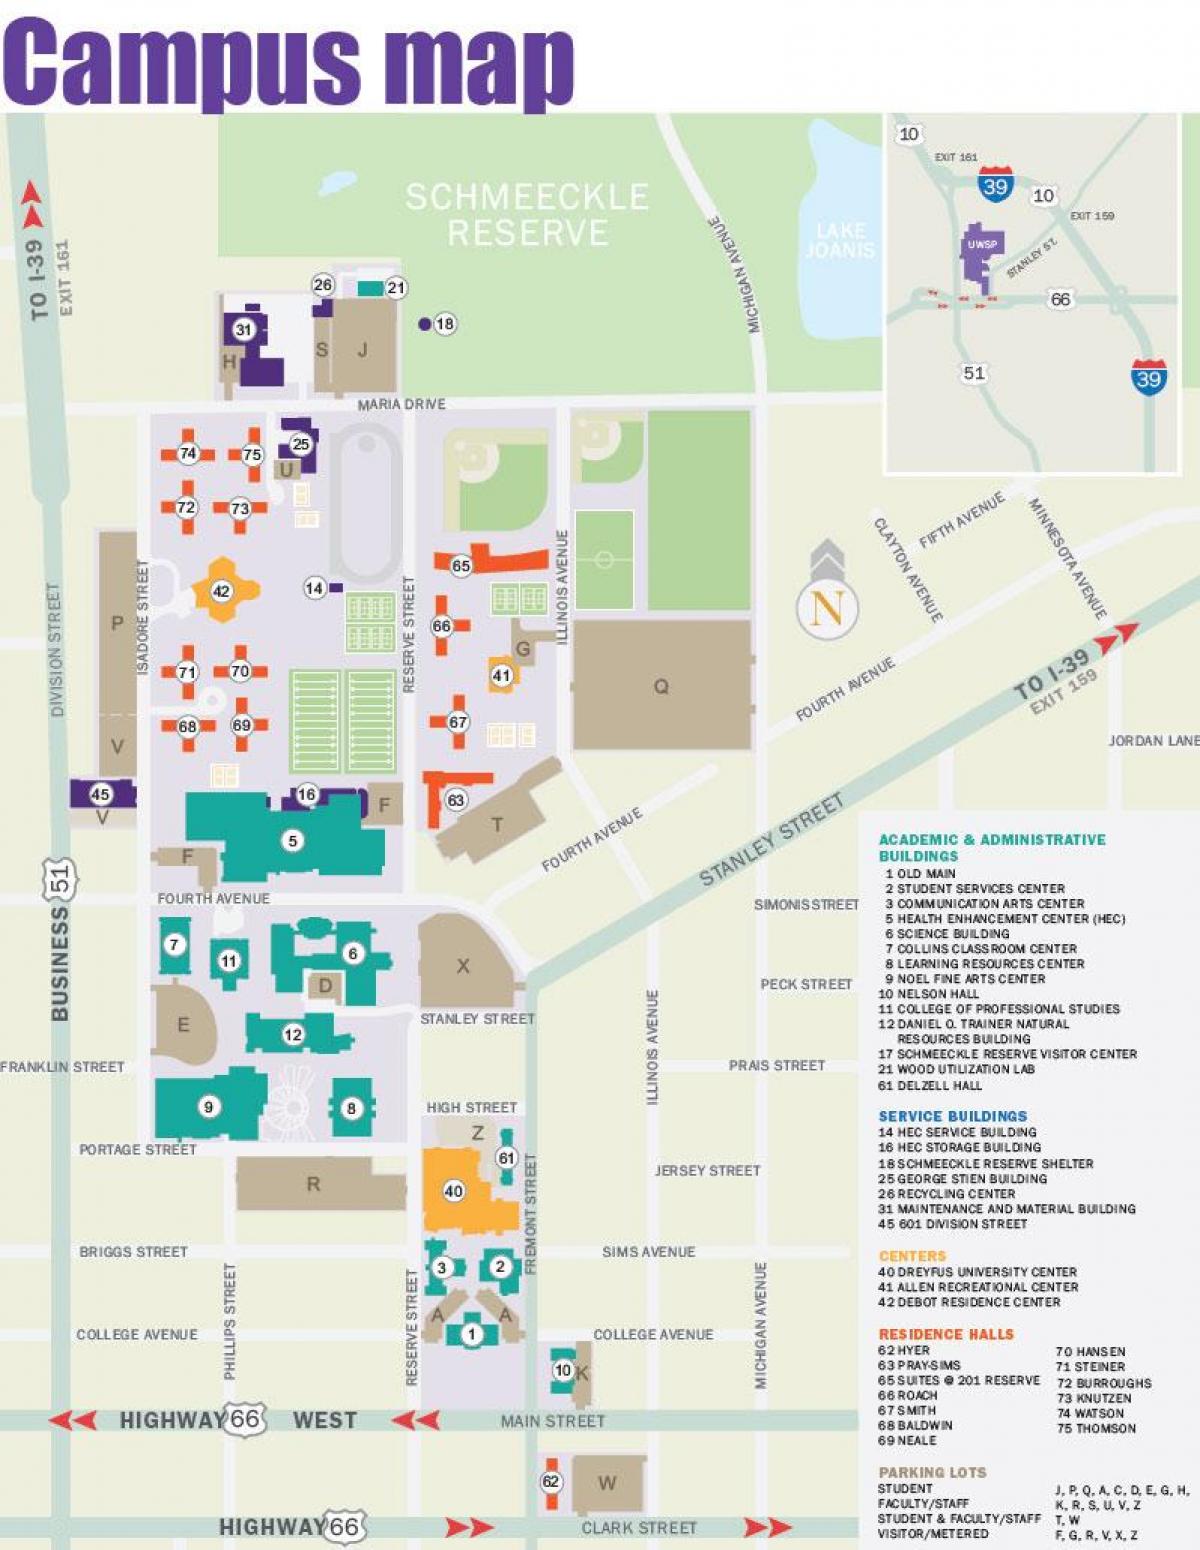 карта кампуса нью-йоркского университета